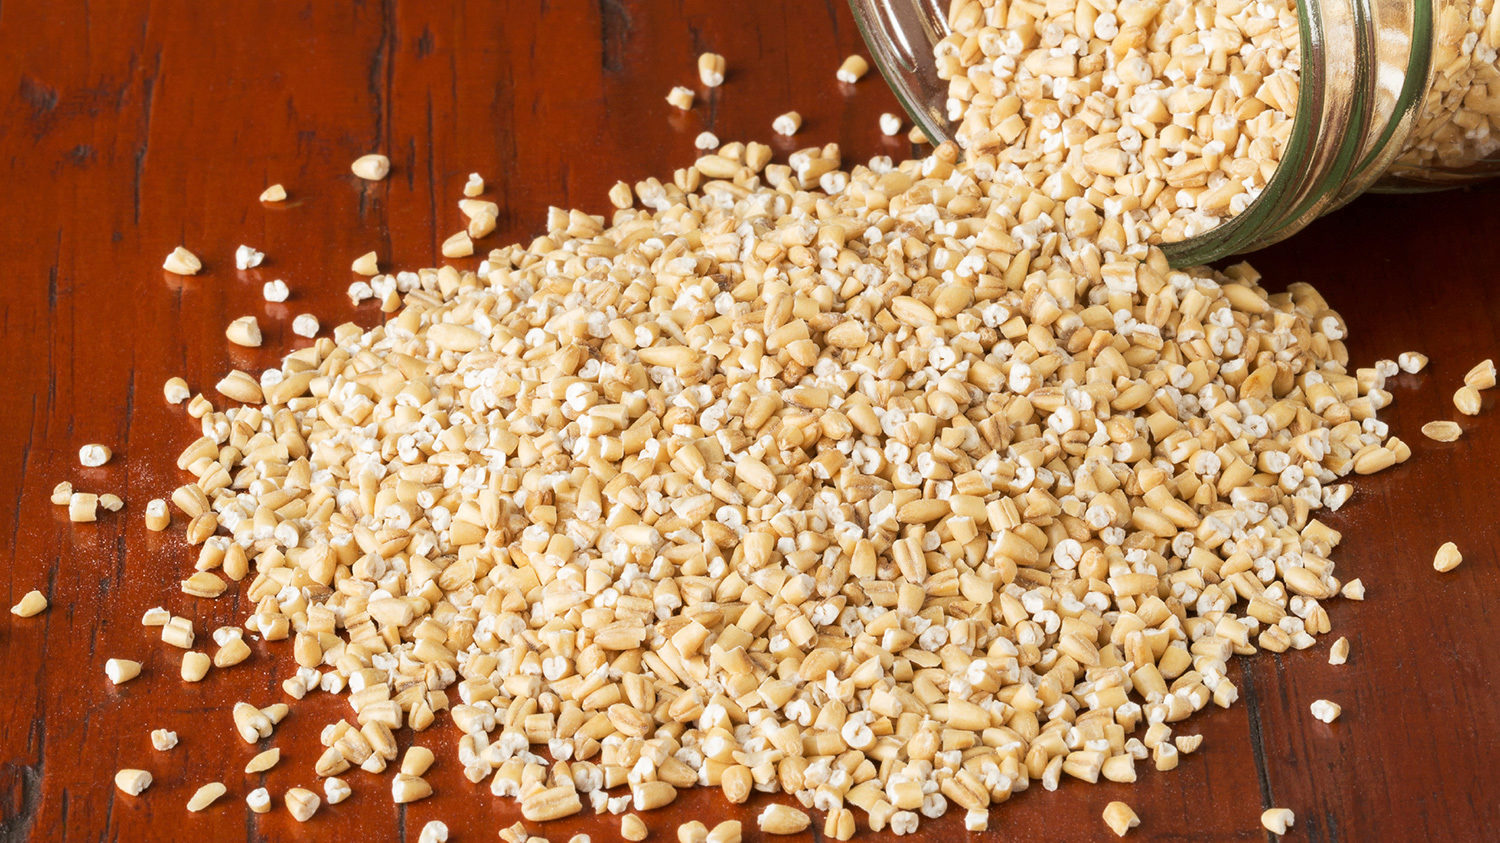 http://www.sobeys.com/wp-content/uploads/2015/06/whole-grains-steel-cut-oats.jpg